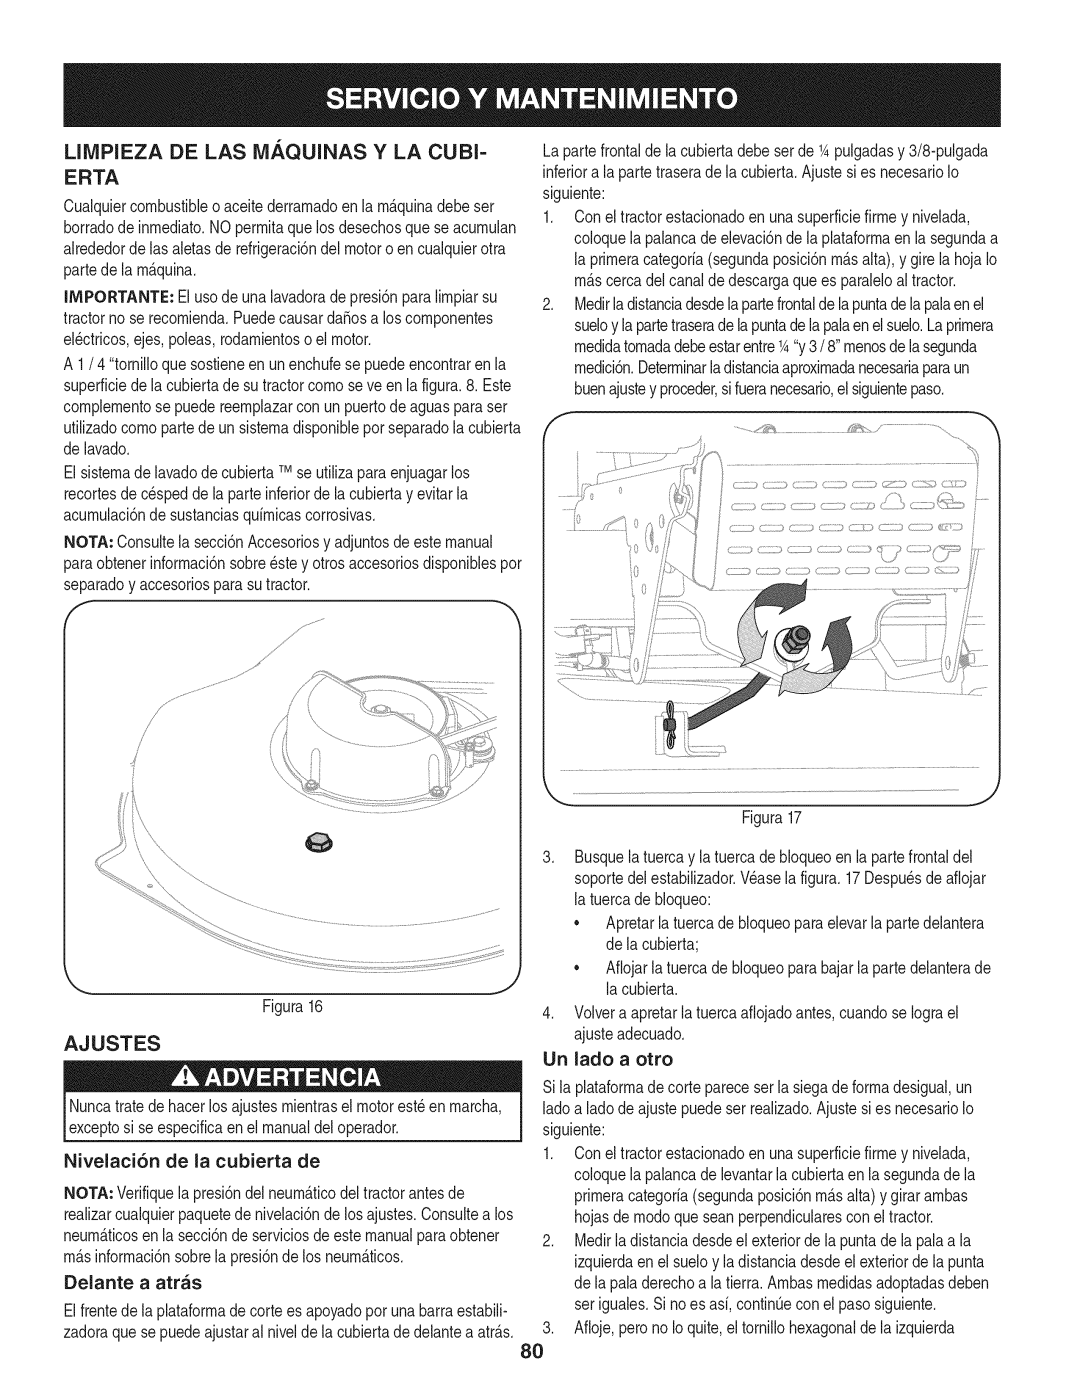 Craftsman 247.28902 manual Limpieza De Las Maquinas Y La Cubi Erta, Ajustes 